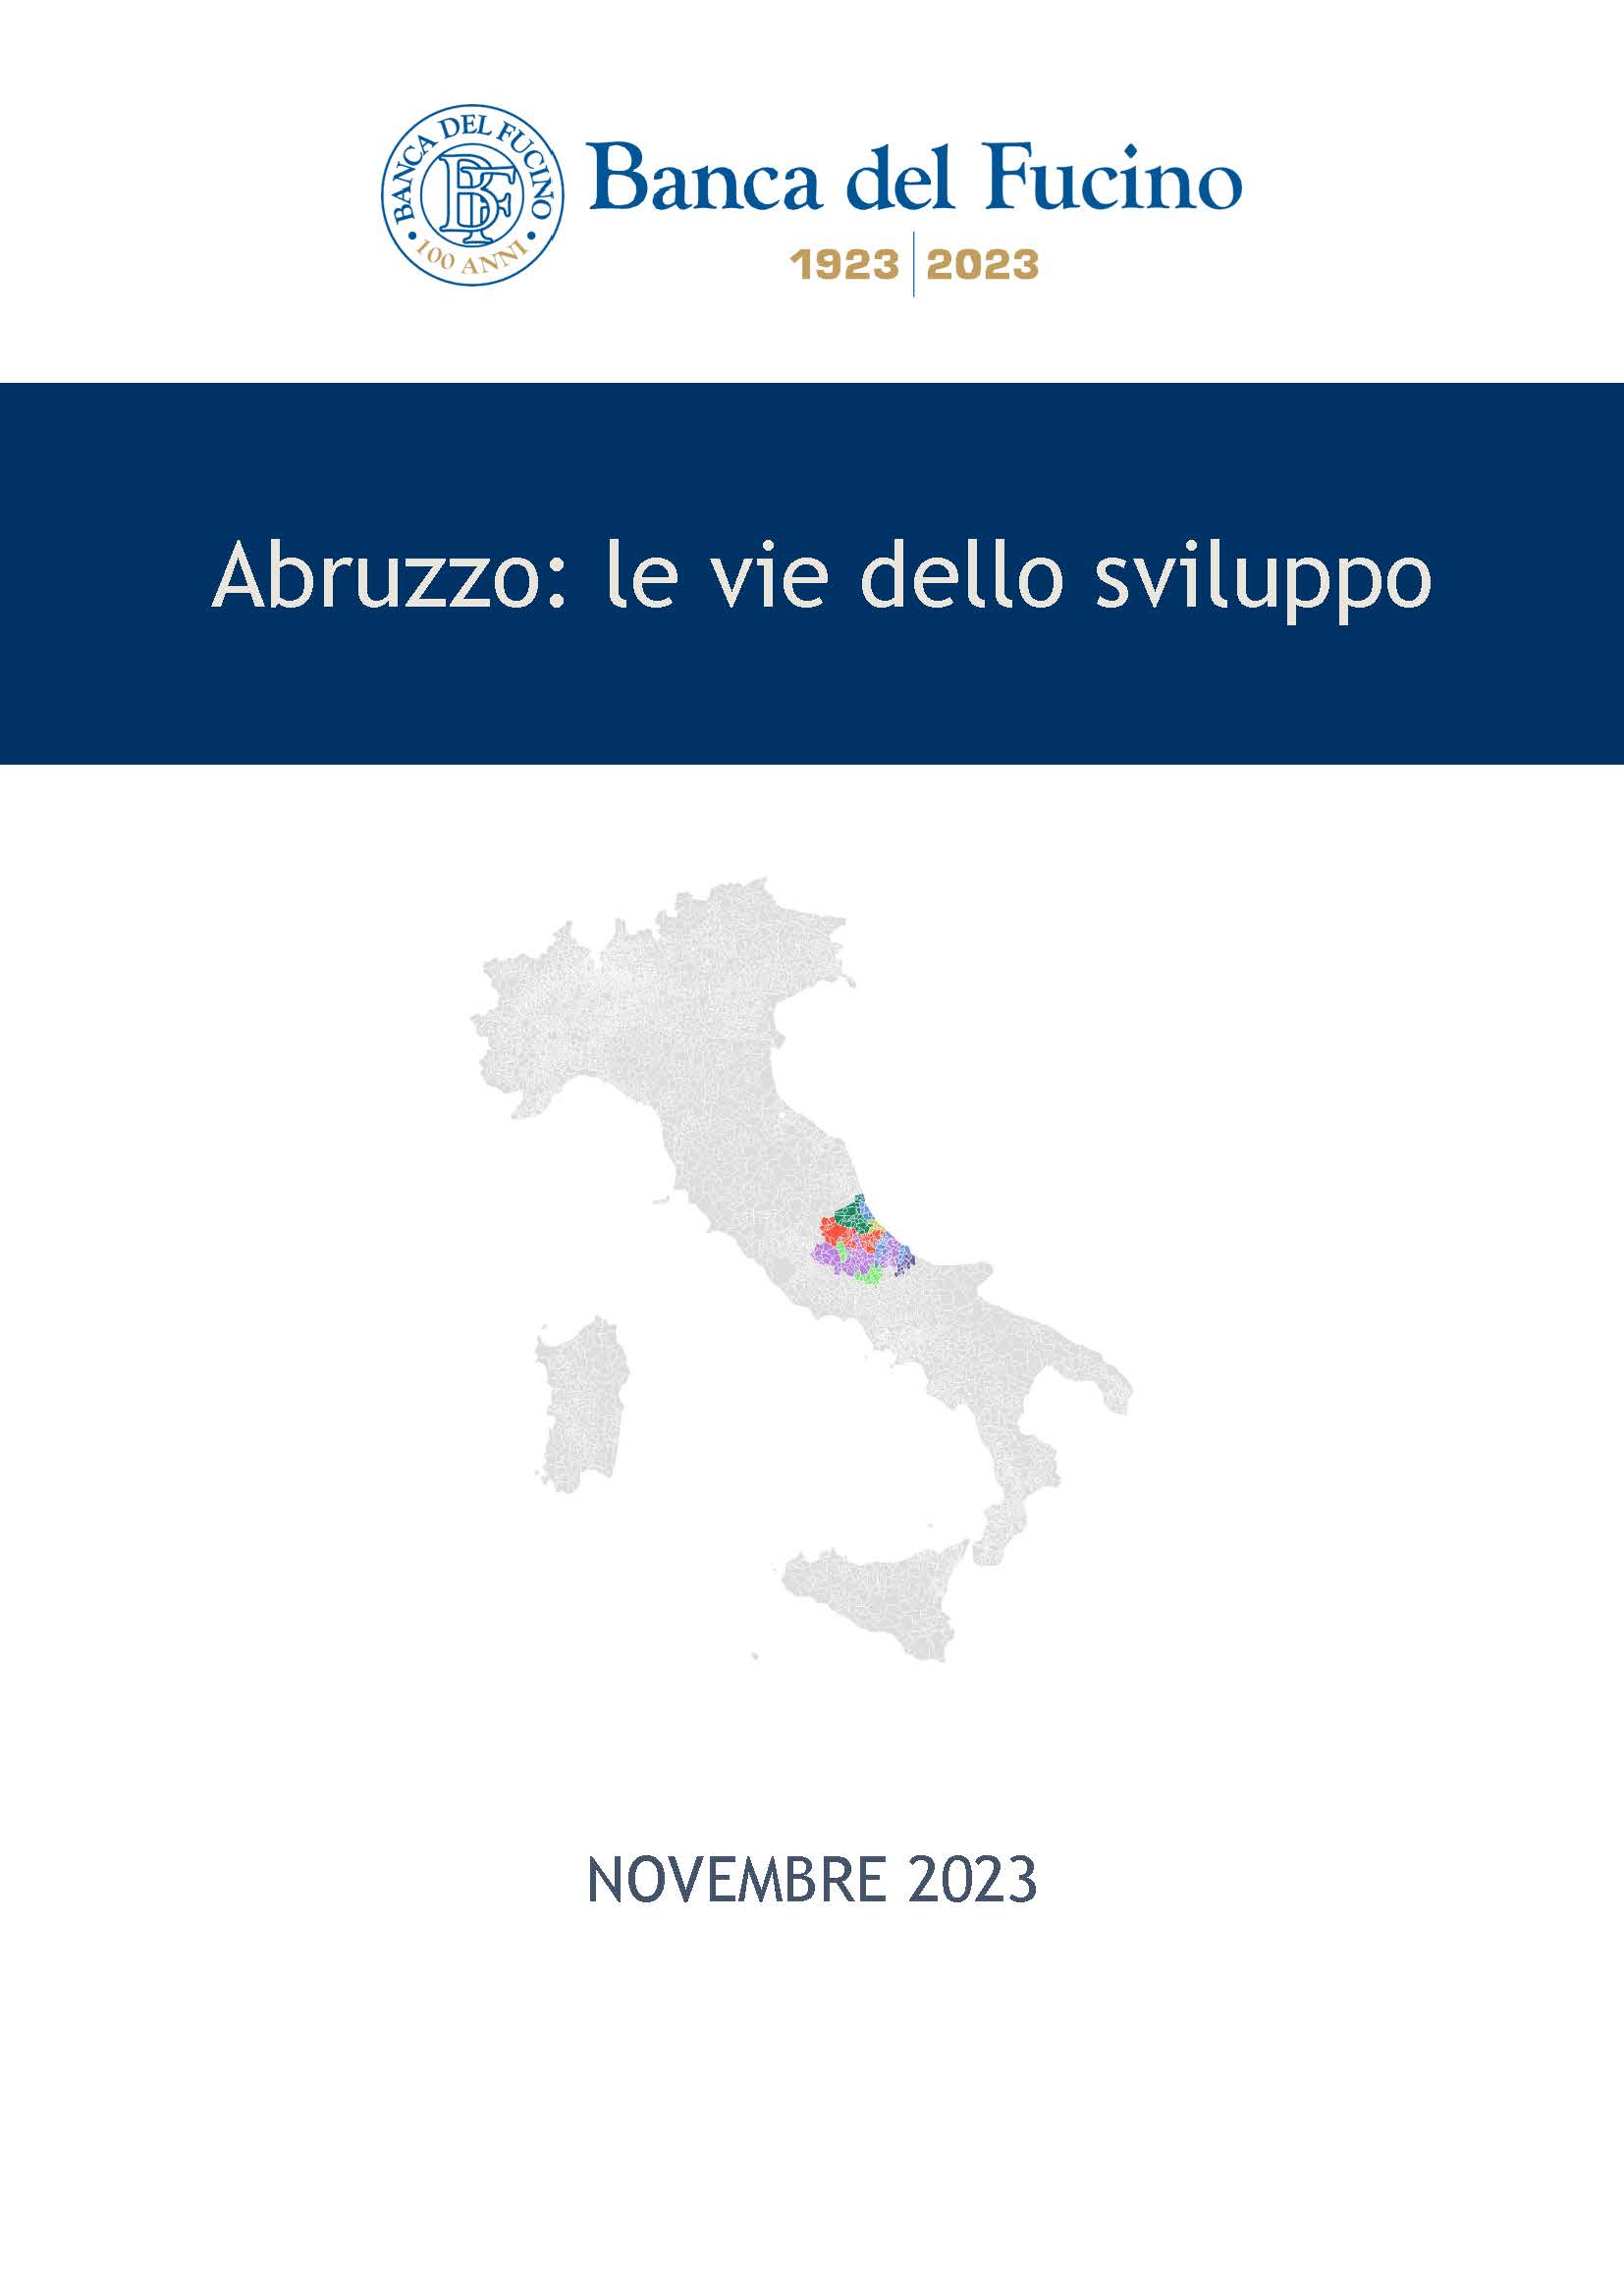 Abruzzo: le vie dello sviluppo